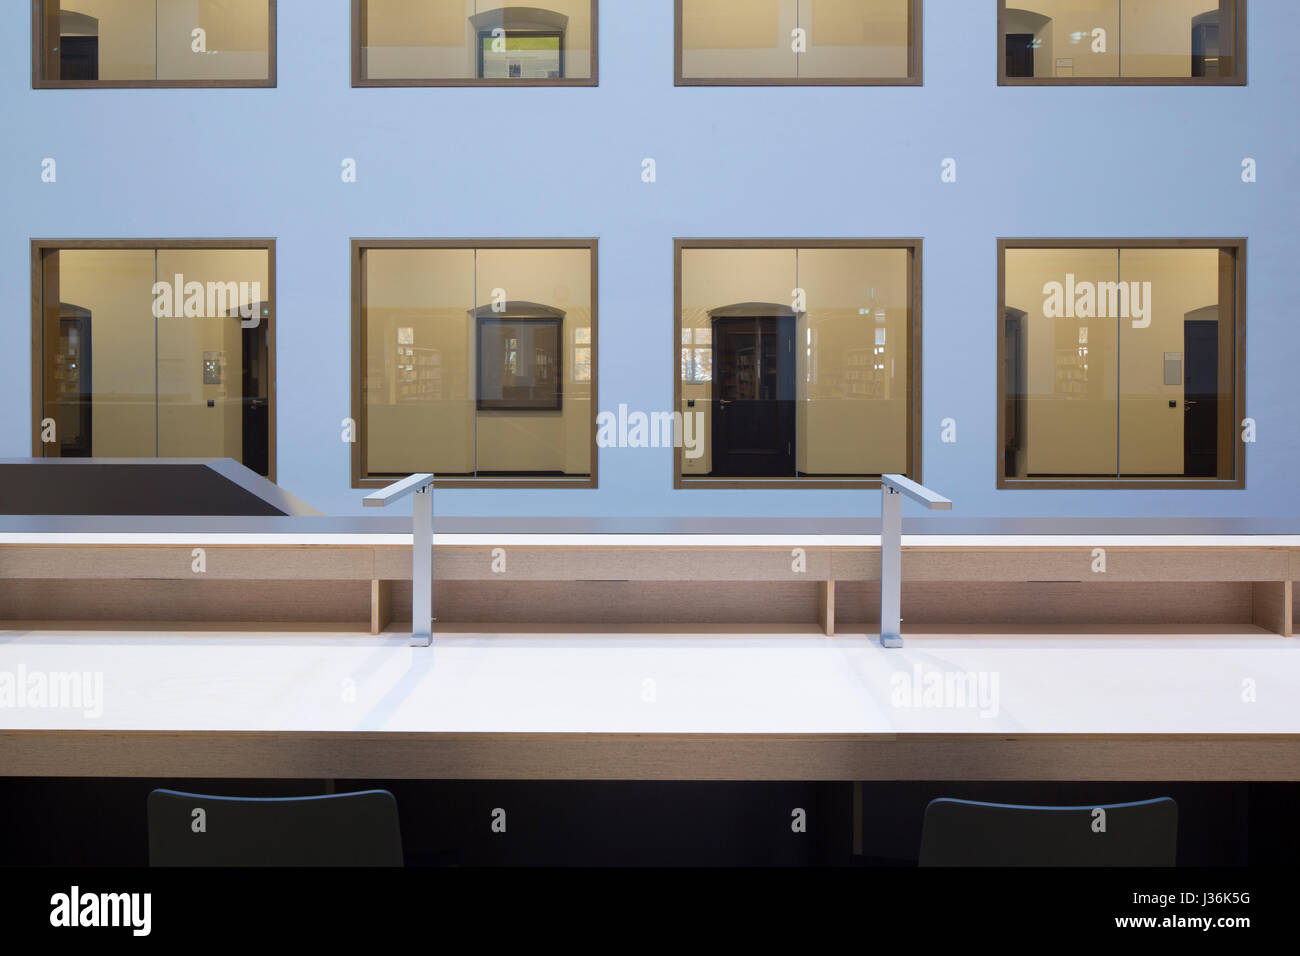 Espace de lecture en mezzanine. Haus der Bildung - Bibliothèque Municipale Bonn, Bonn, Allemagne. Architecte : kleyer.koblitz.letzel.freivogel.architekten, 2015. Banque D'Images